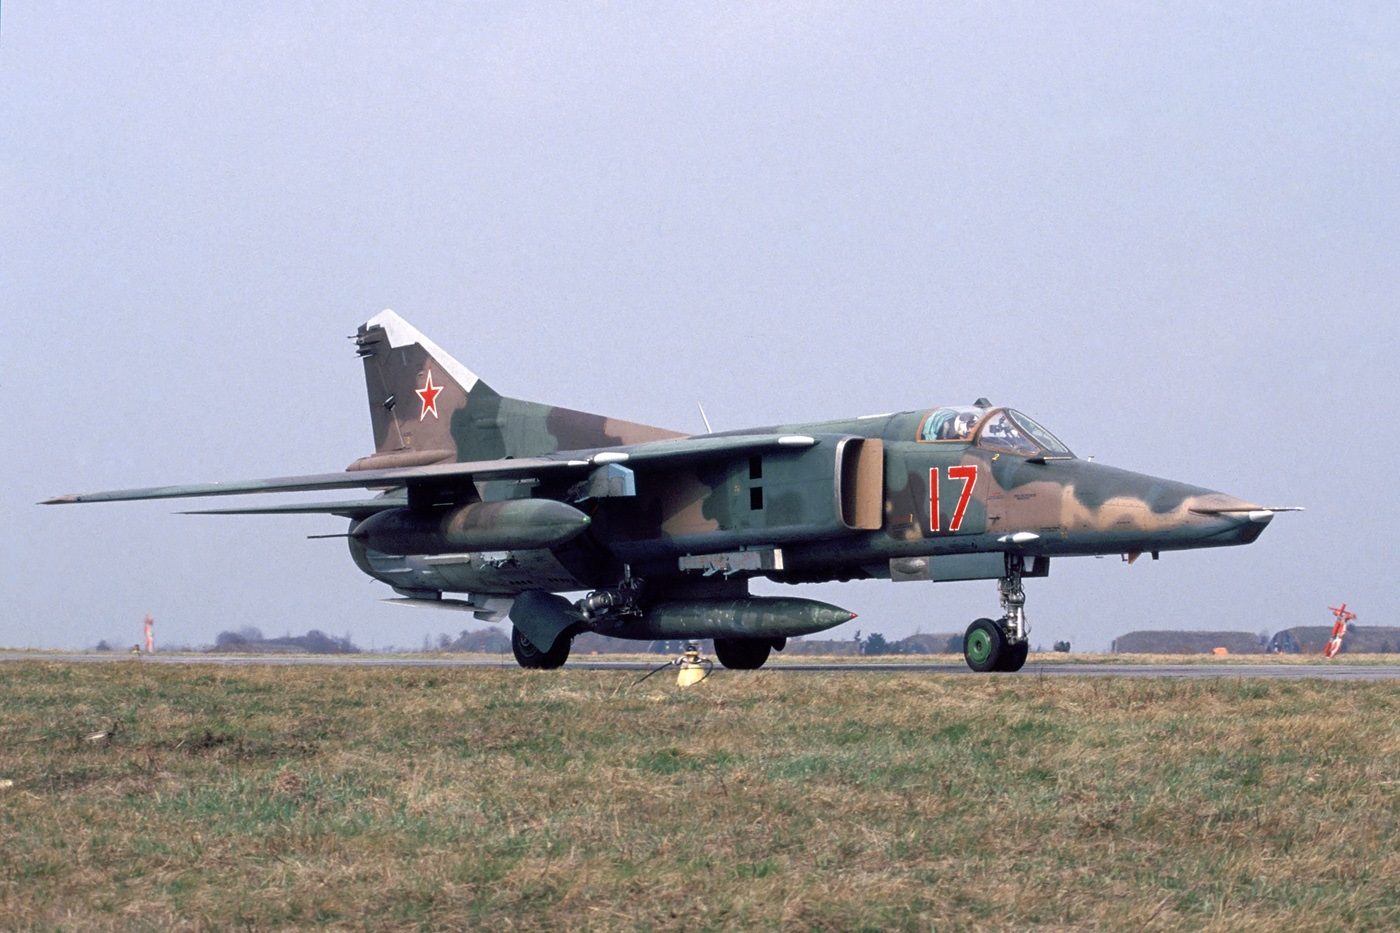 ภาพ: MiG-23ML (23-22B) กองทัพอากาศลิเบีย